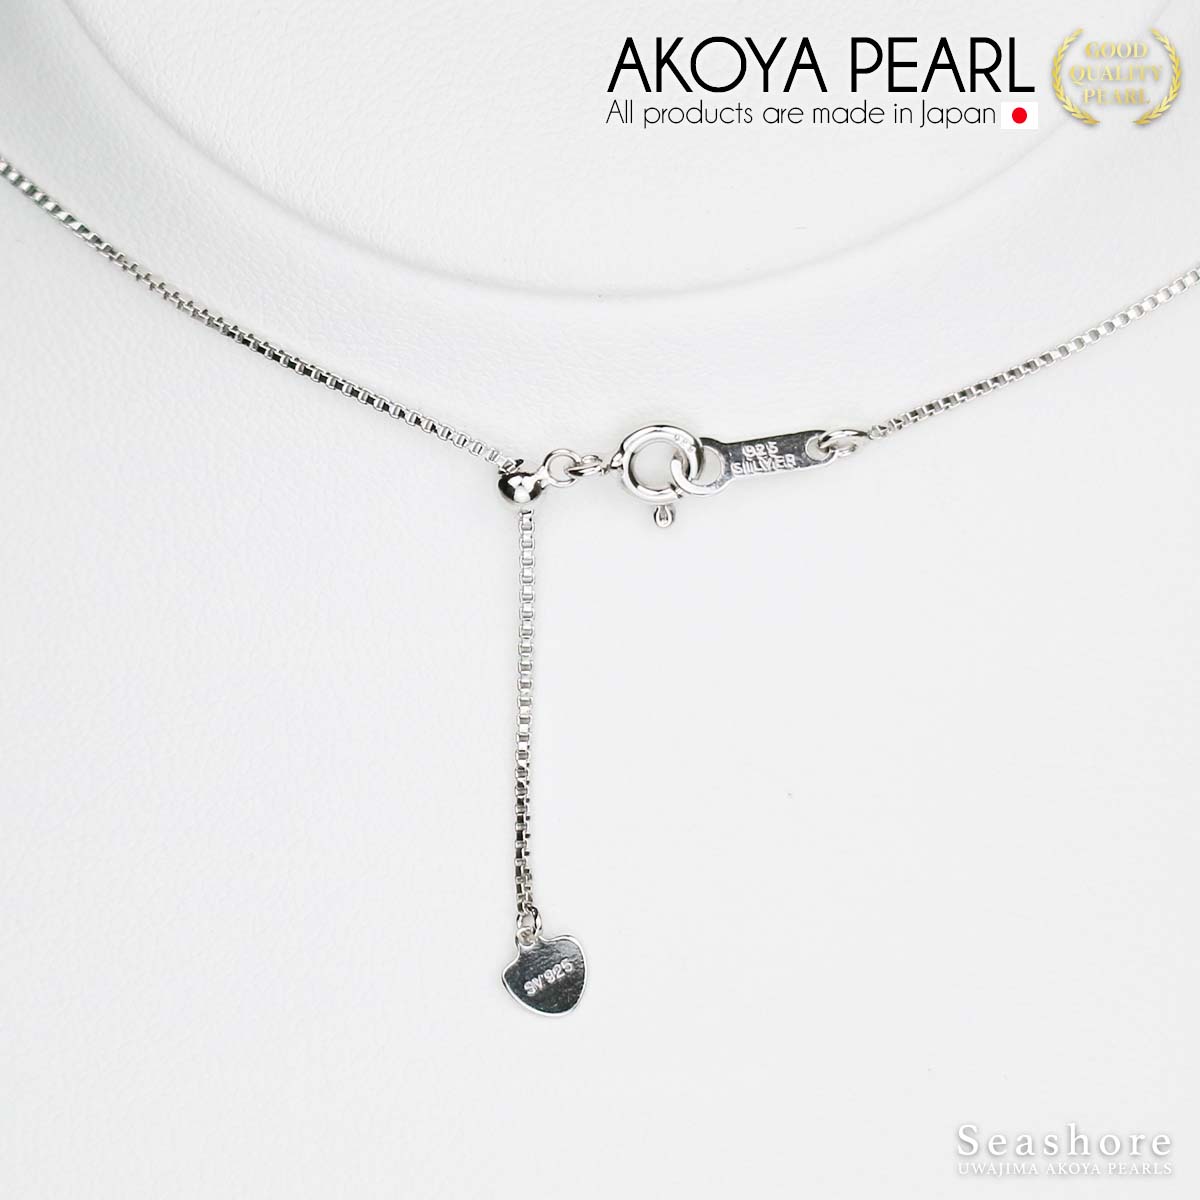 Akoya 珍珠站项链 [4 种珍珠颜色] 7 颗珠子 8.0-9.0mm SV925 威尼斯链带纸板盒 (4055)